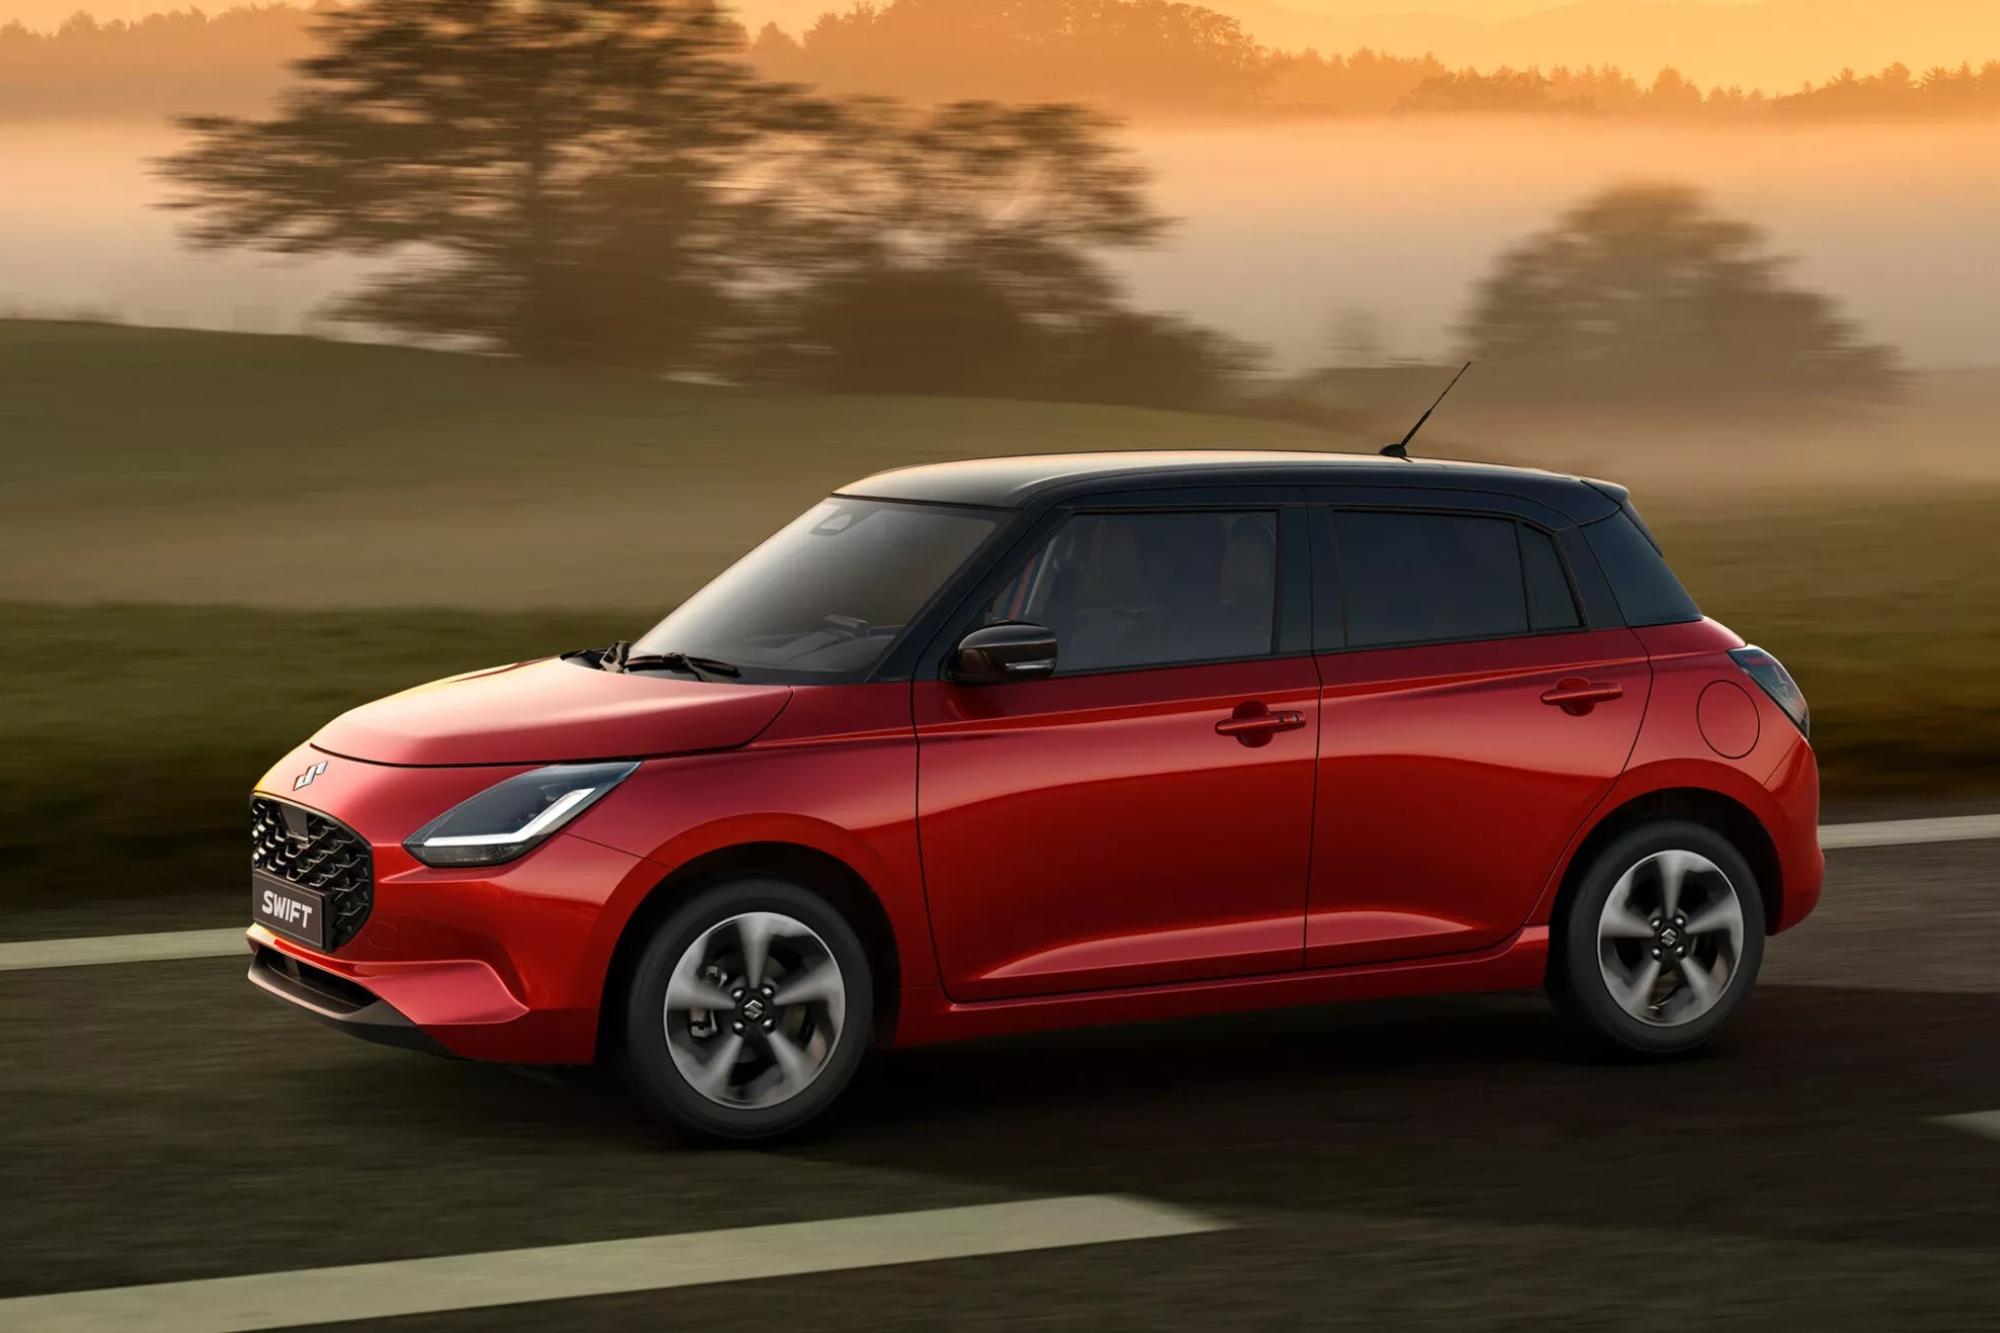 Έρχεται τον Απρίλιο με τιμές από 18.450 ευρώ το νέο Suzuki Swift